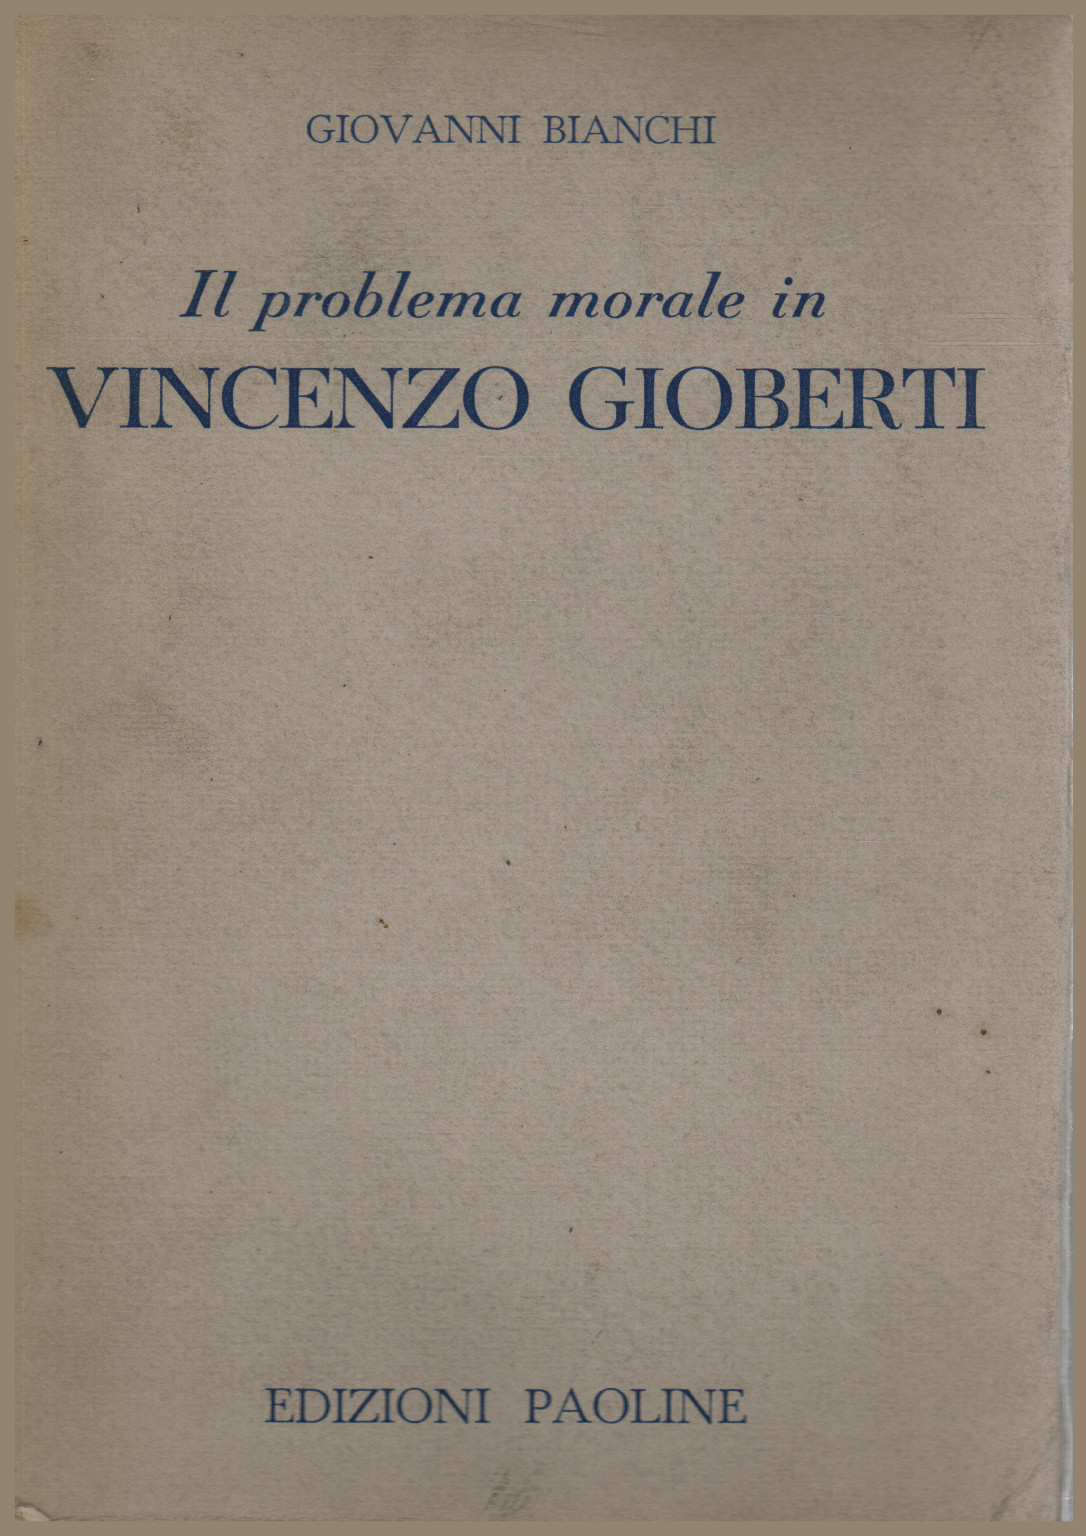 El problema de la moral en Vincenzo Gioberti, s.una.